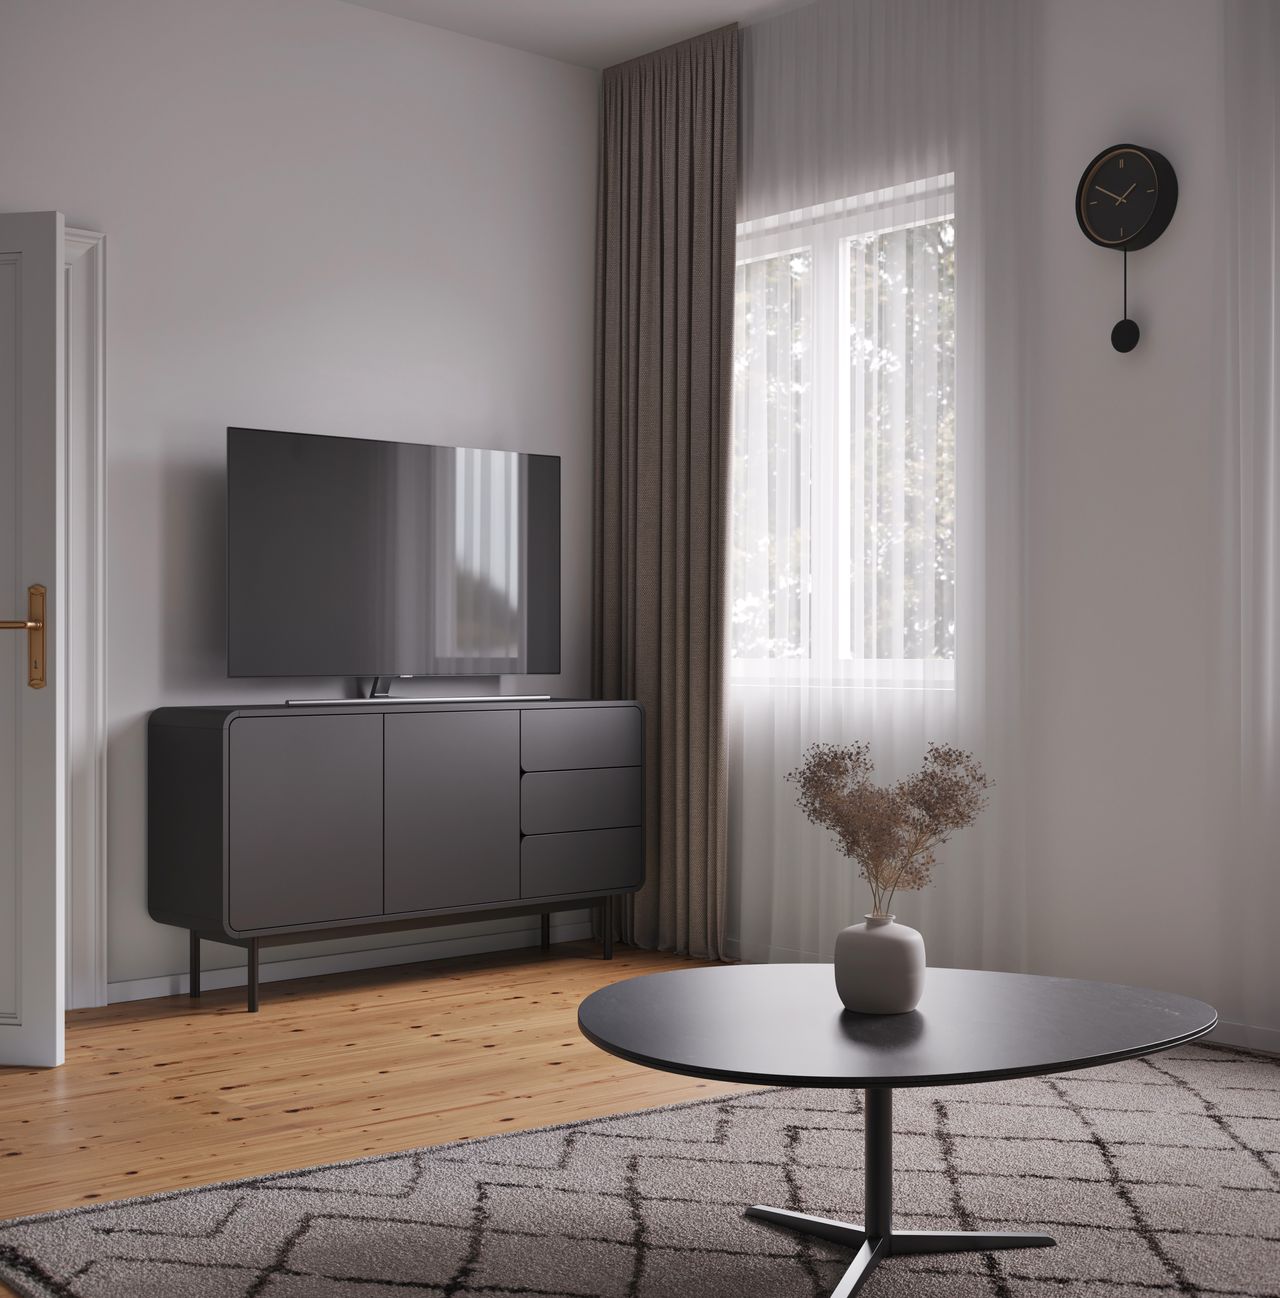 Zehlendorf 1-bedroom apartment with modern amenities